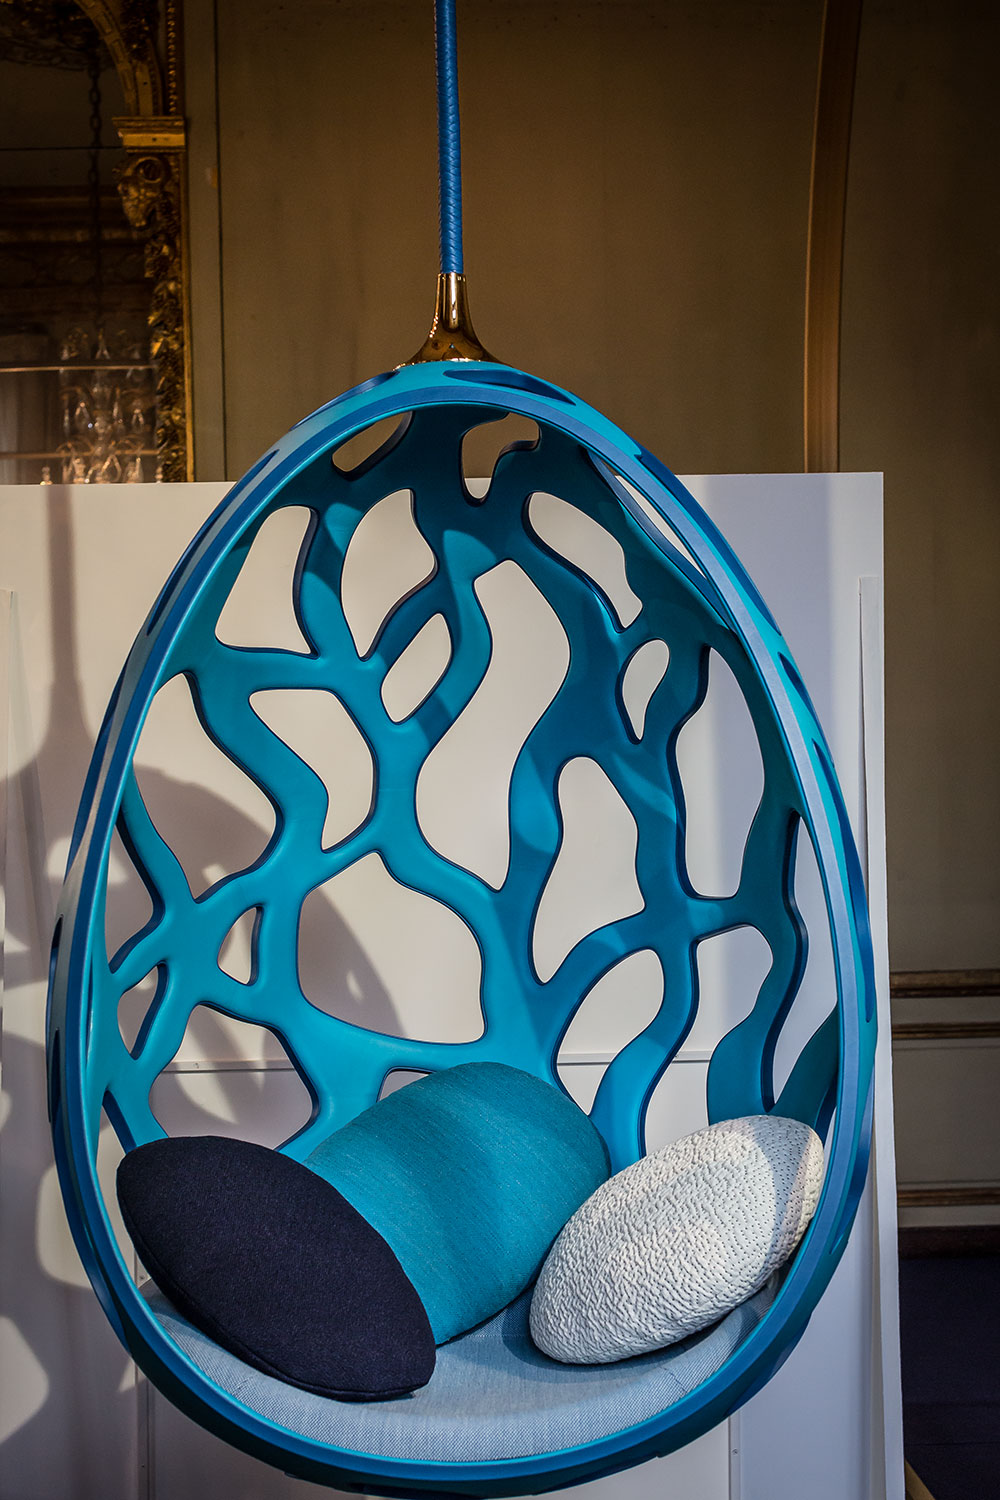 Fauteuil Cocoon, structure en fibre de verre moulée, gainée de veau matelassée par Fernando et Humberto Campana pour les Objets Nomades de Louis Vuitton